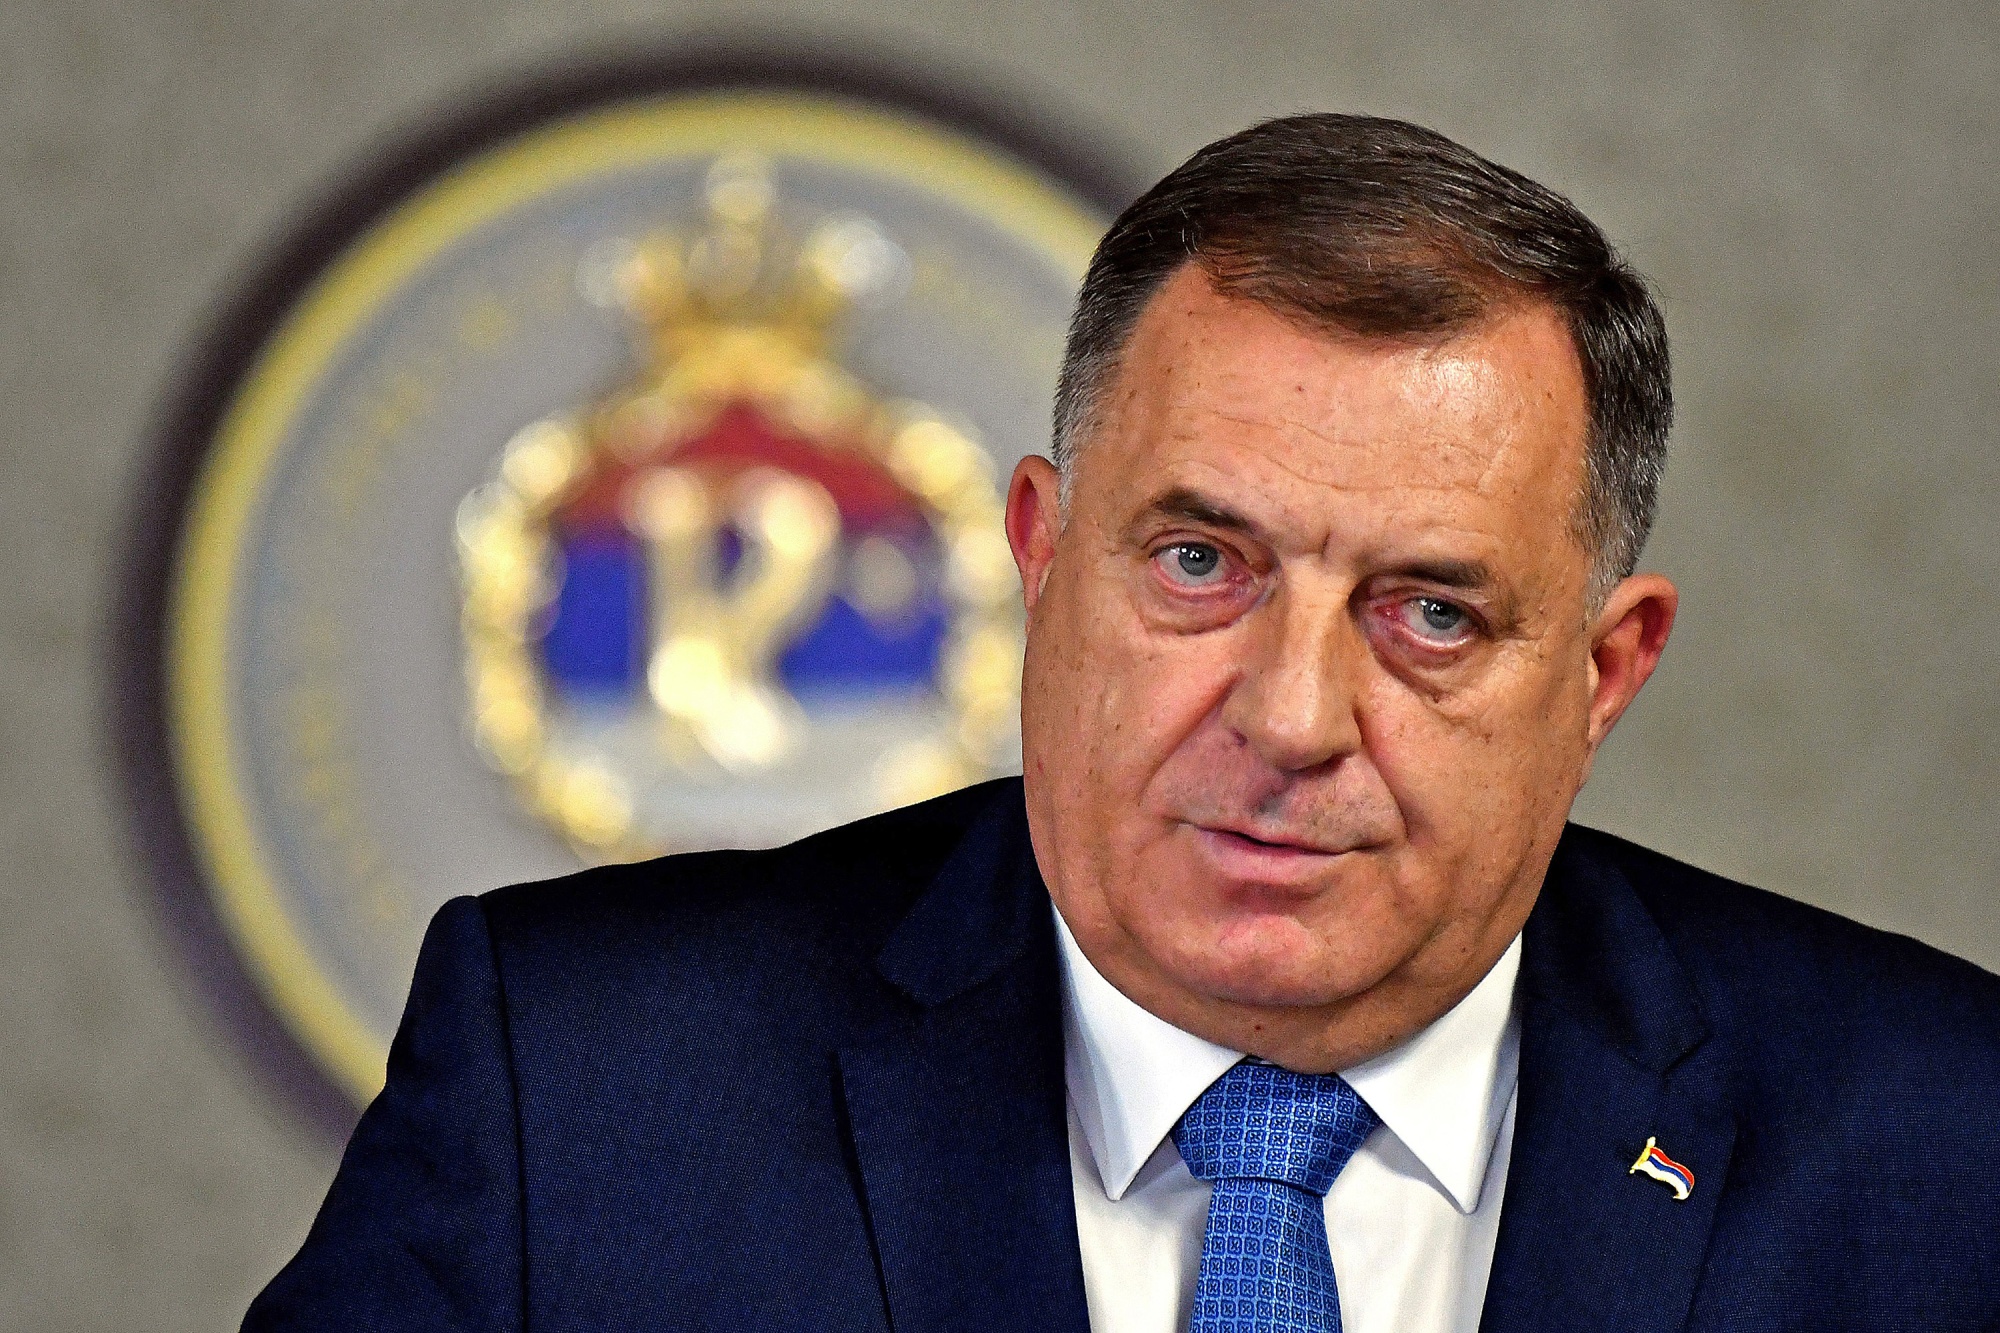 Il leader serbo-bosniaco Dodik contro la Germania: "Nessuno crede a loro"